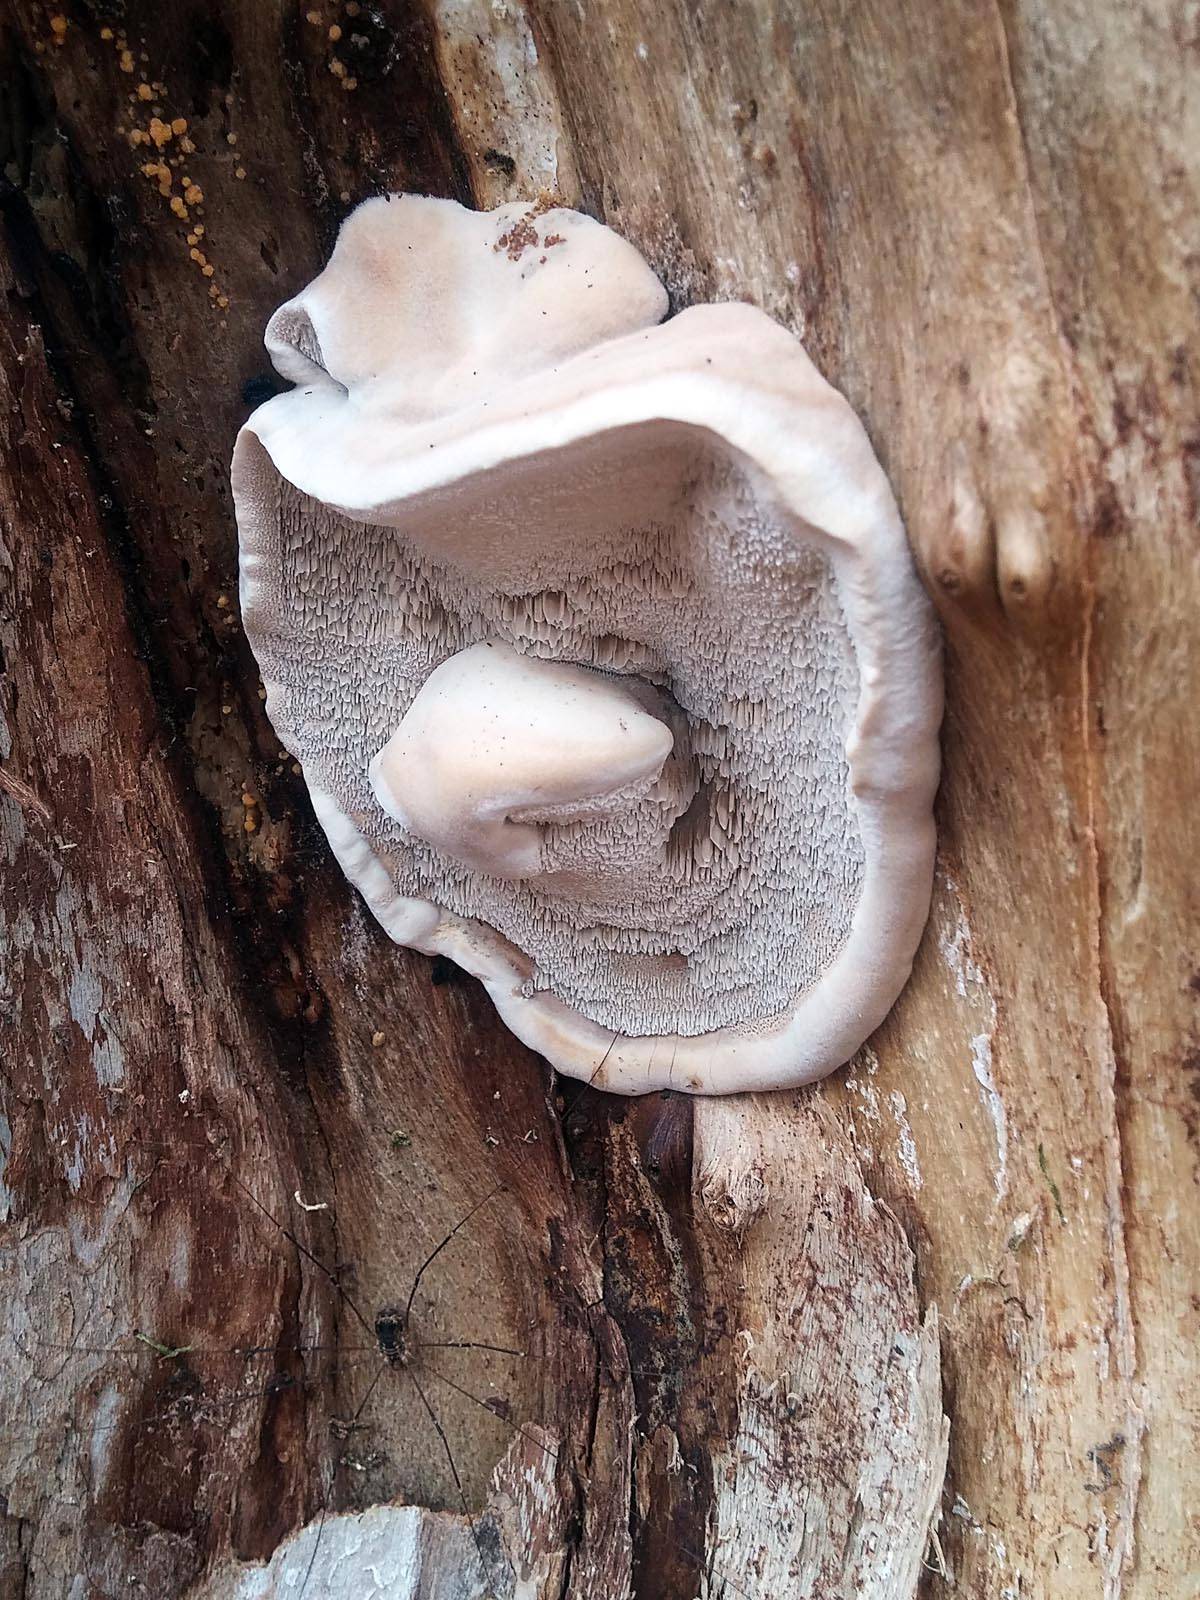 Трутовик лакированный (ganoderma lucidum): гриб бессмертия